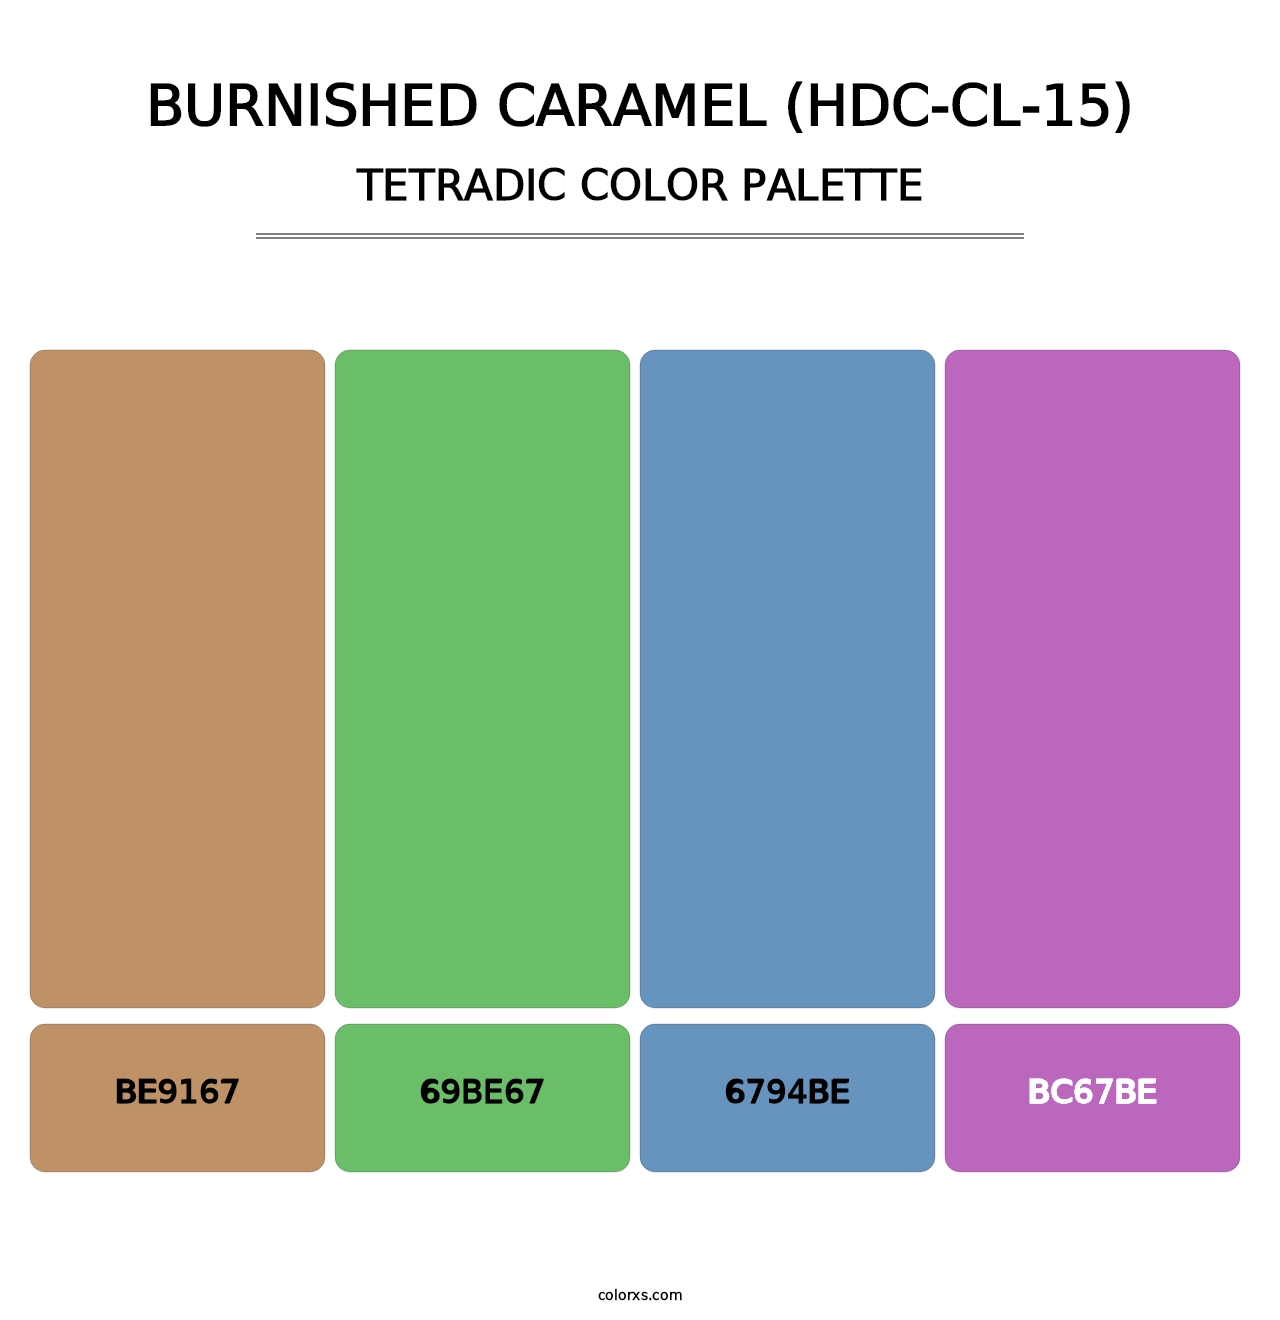 Burnished Caramel (HDC-CL-15) - Tetradic Color Palette